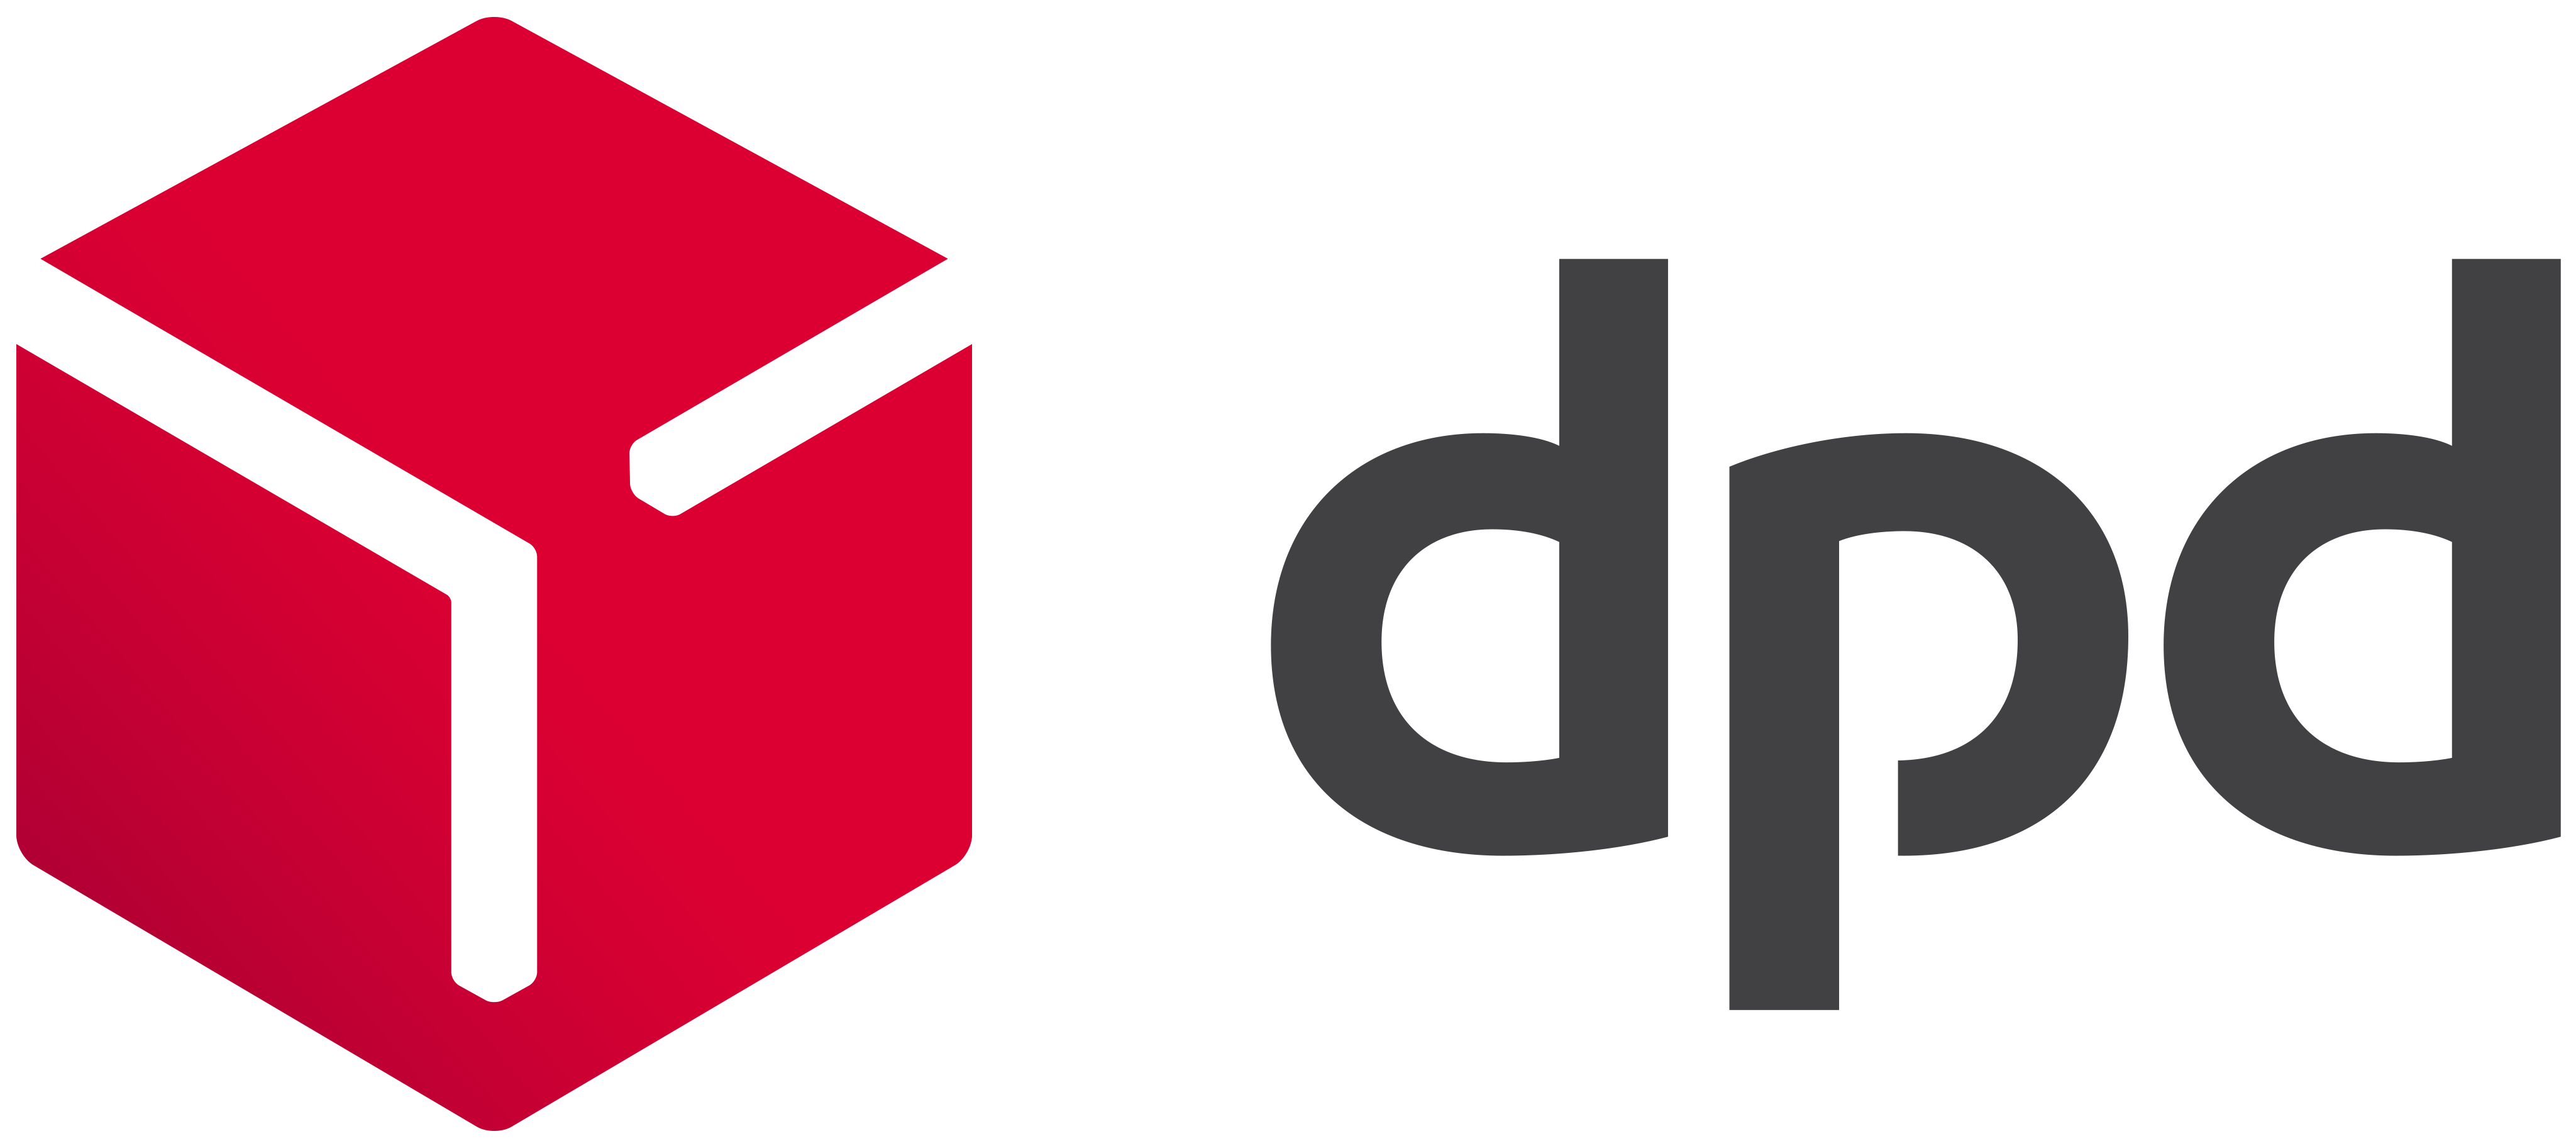 dpd_logo